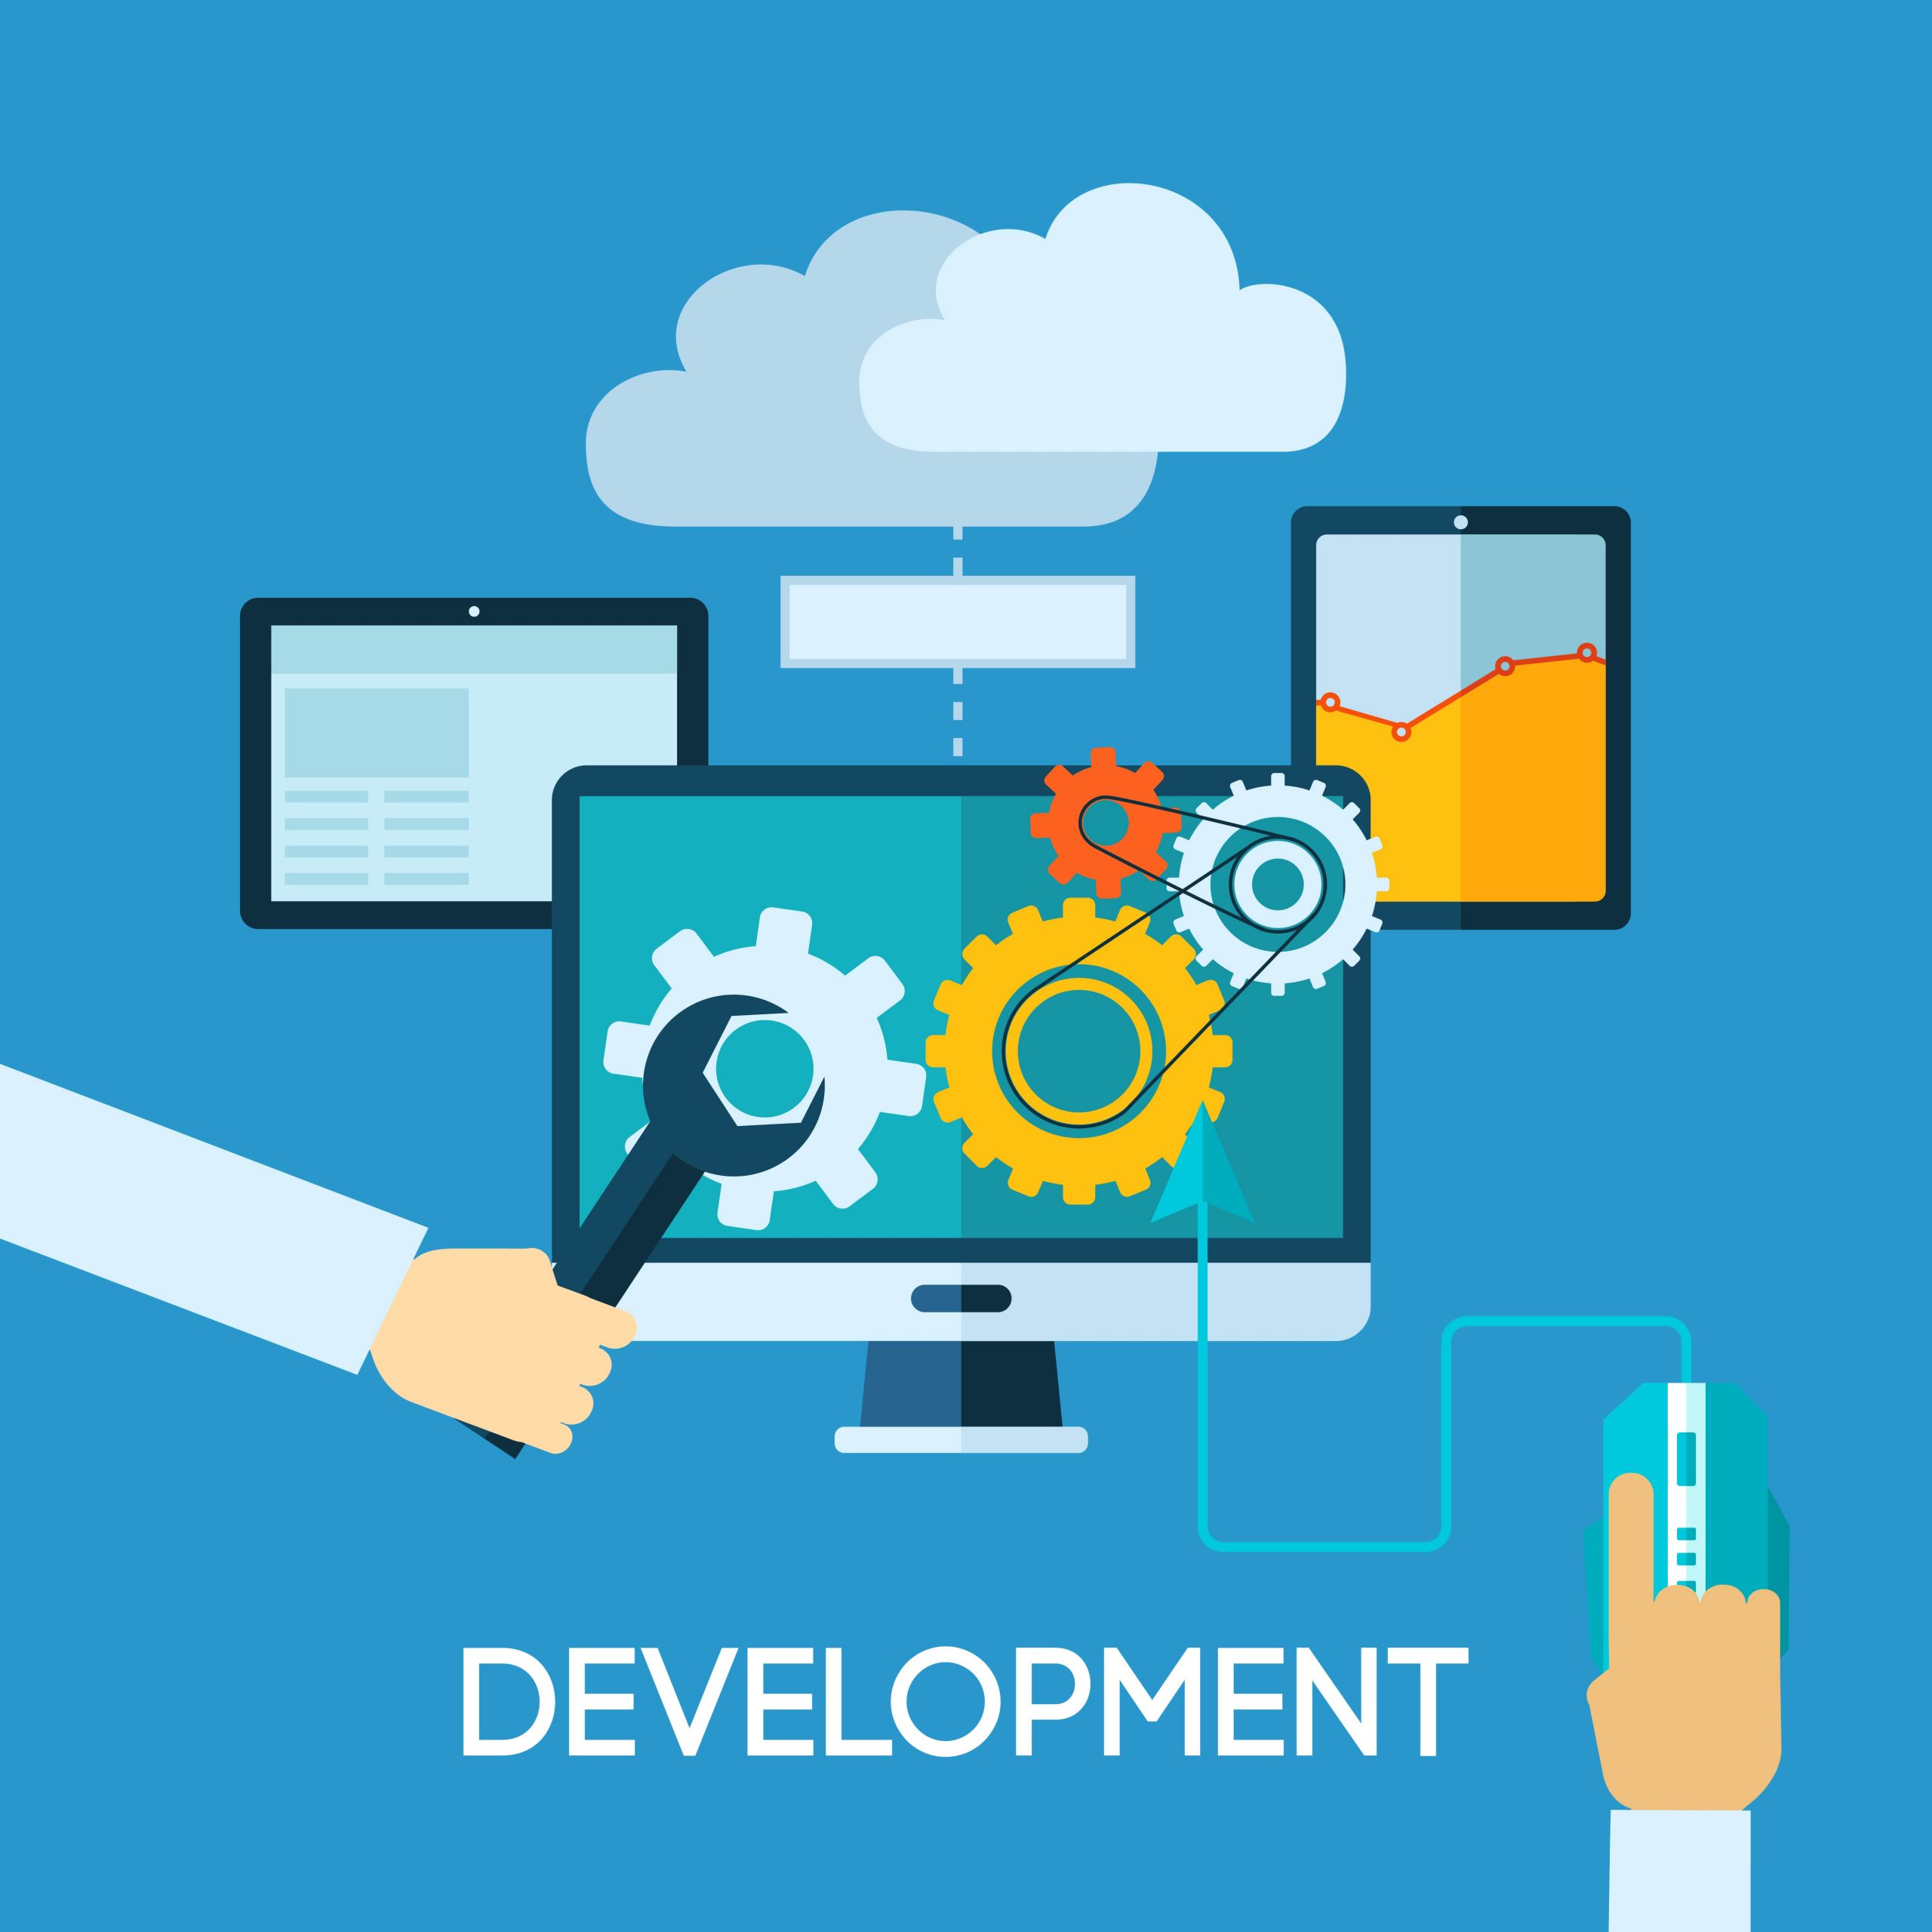 Web App Development Services